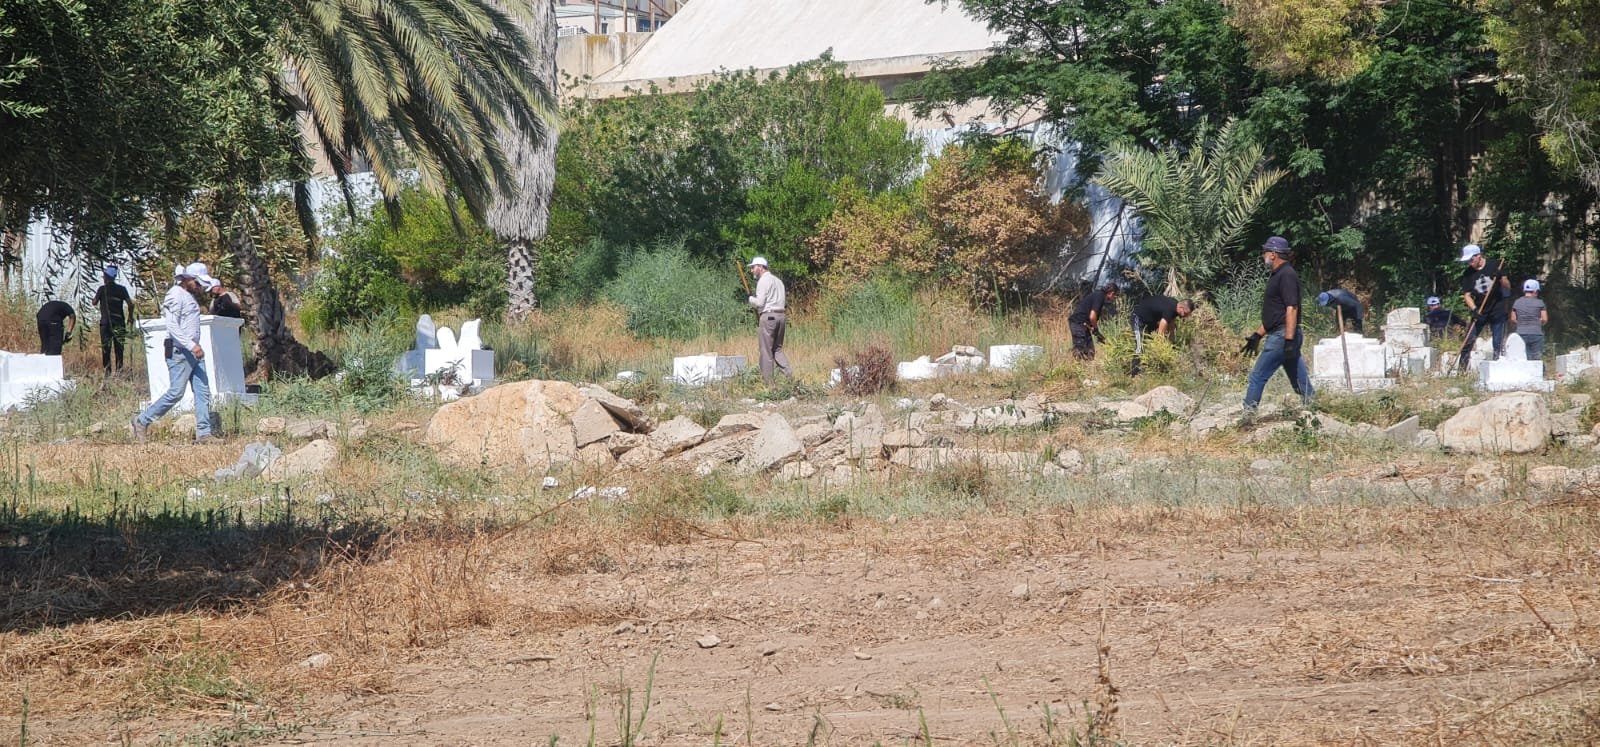 لجنة "أوقافُنا" بالتعاون مع جهات محلية تنظم يوم عمل تطوعي لتنظيف مقبرة القسام-حيفا-7